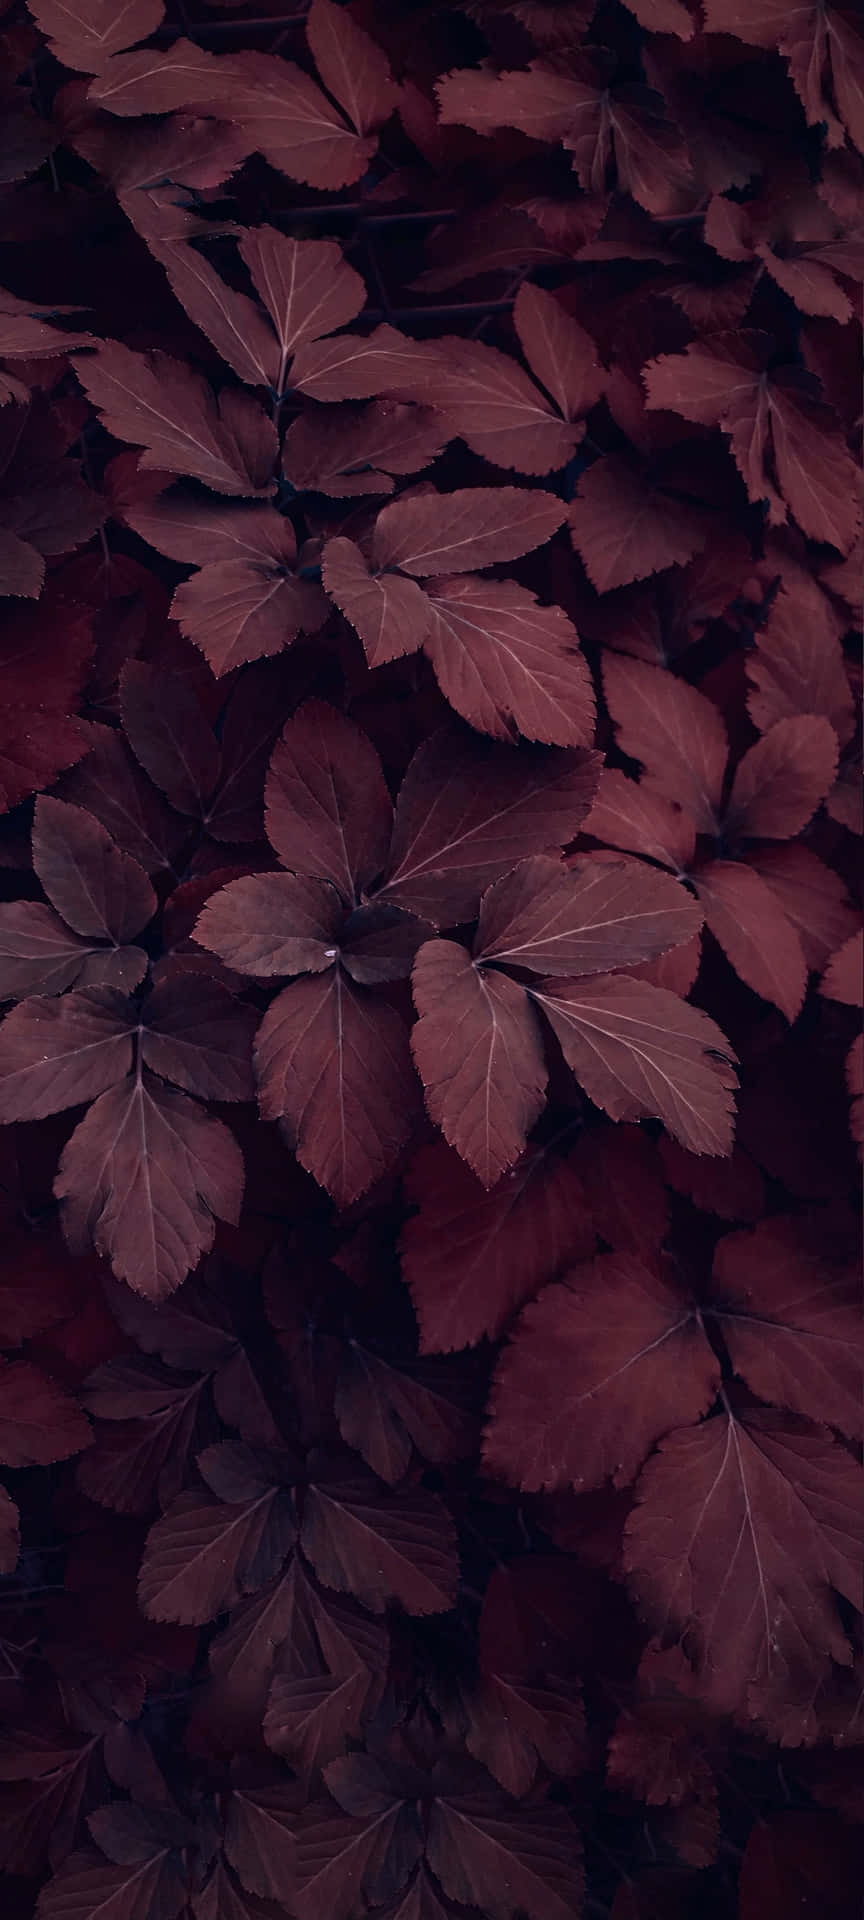 Burgundy Leaves Texture Aesthetic.jpg Wallpaper